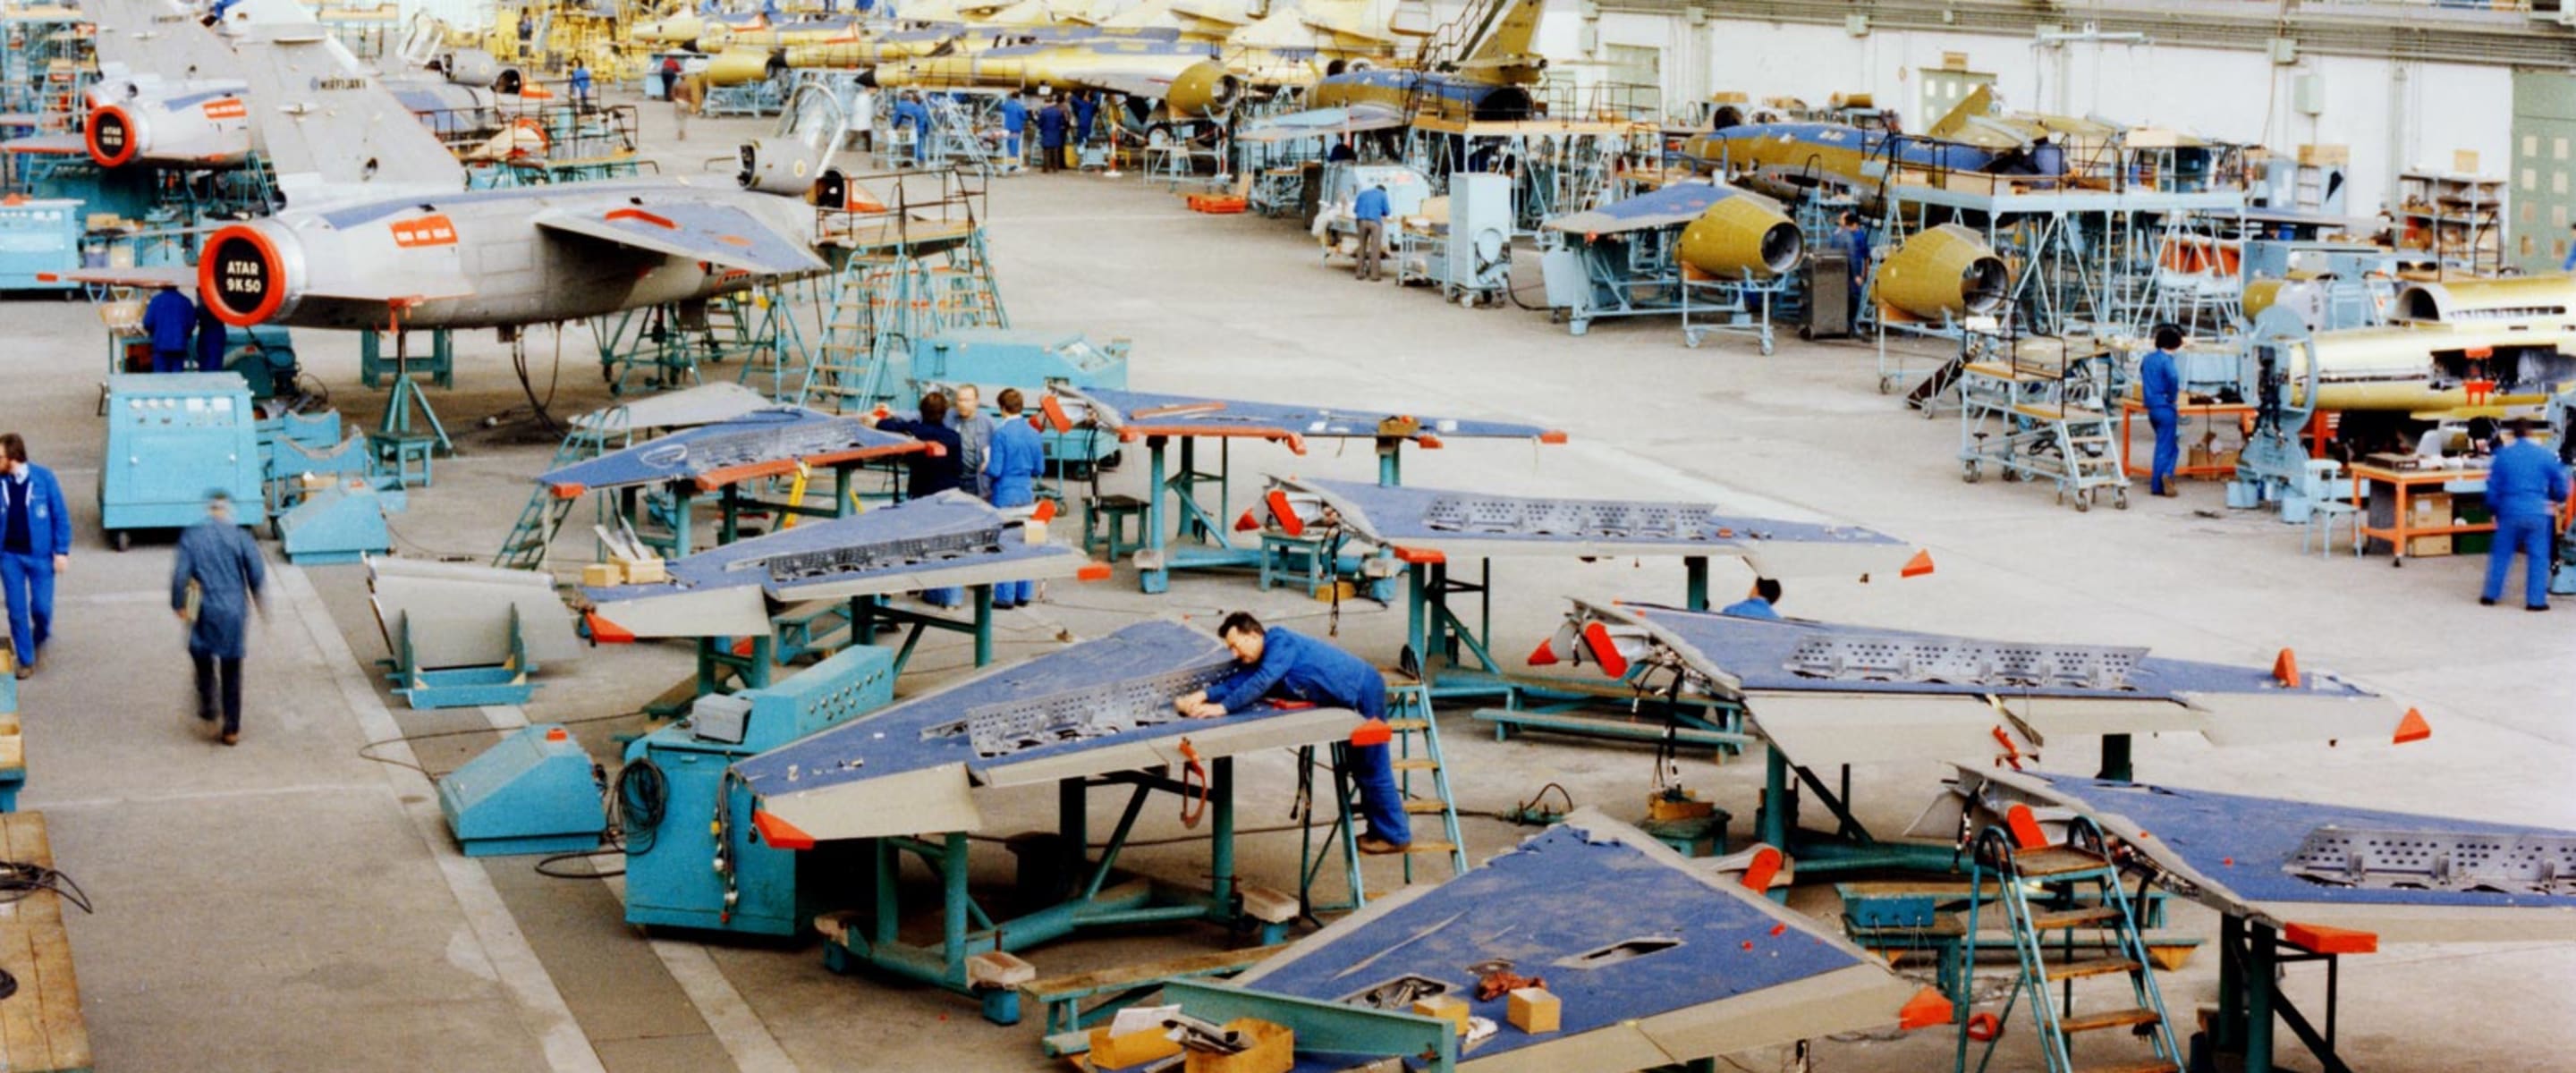 Dassault Aviation facility: Bordeaux-Mérignac, France. Mirage F1 and Super Étendard. Production line.